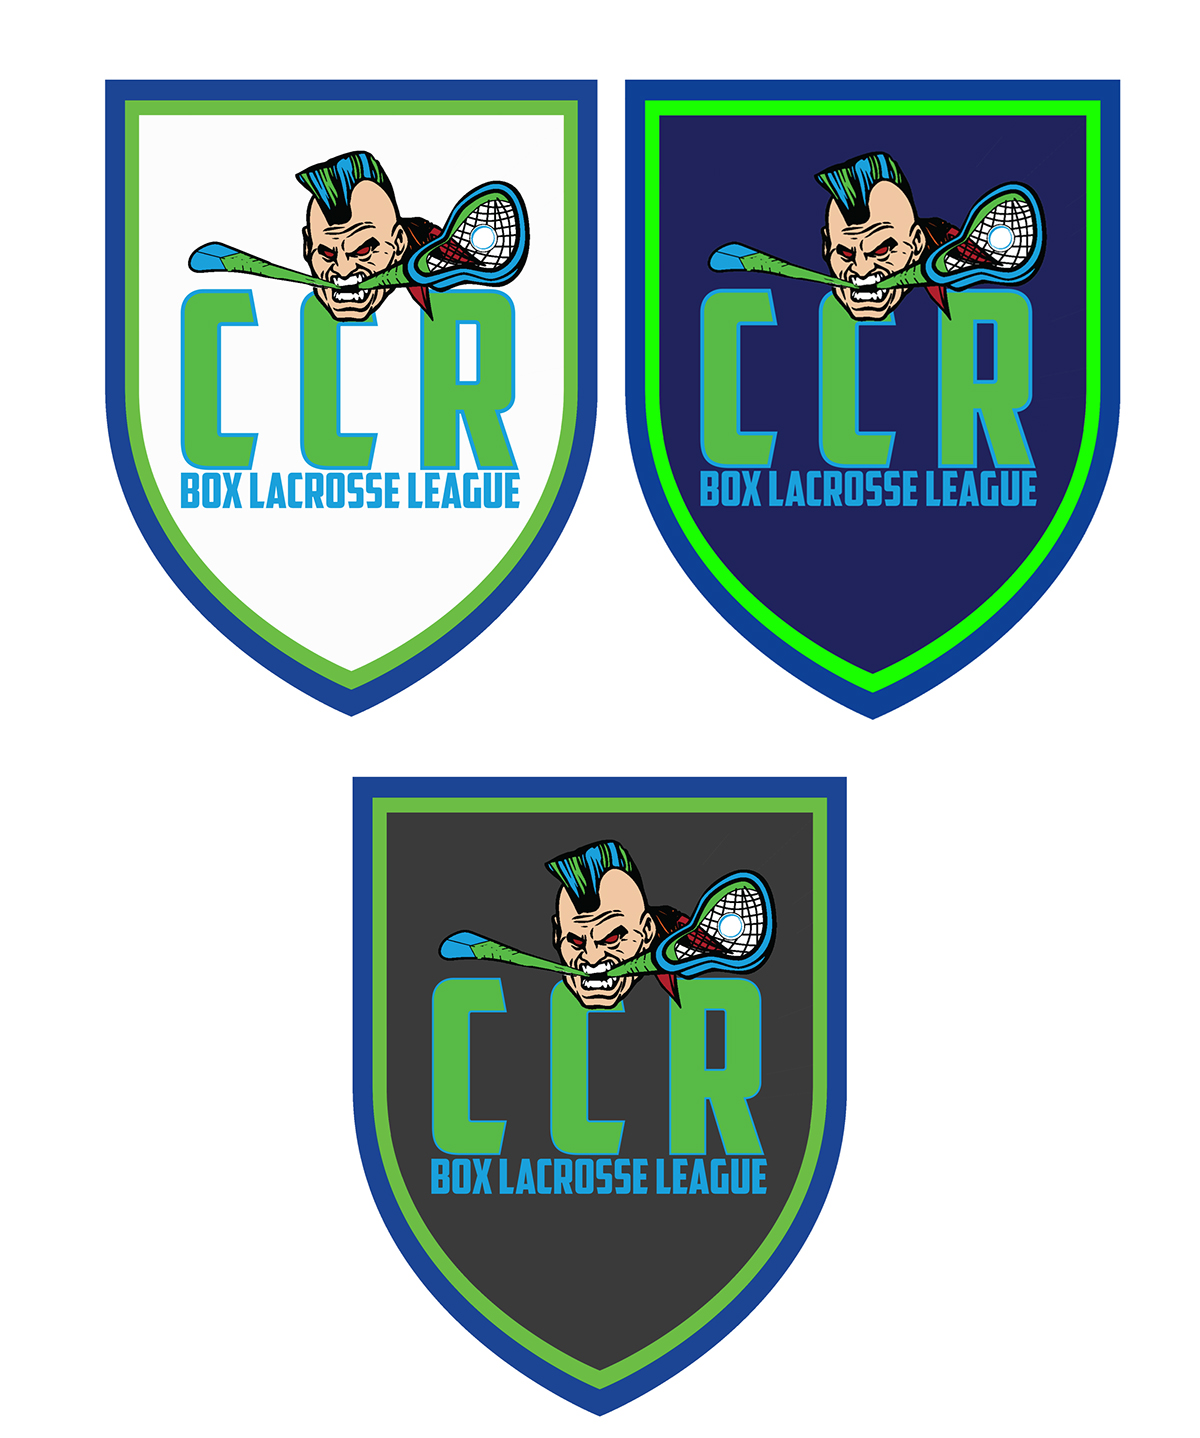 CCR box lacrosse logo